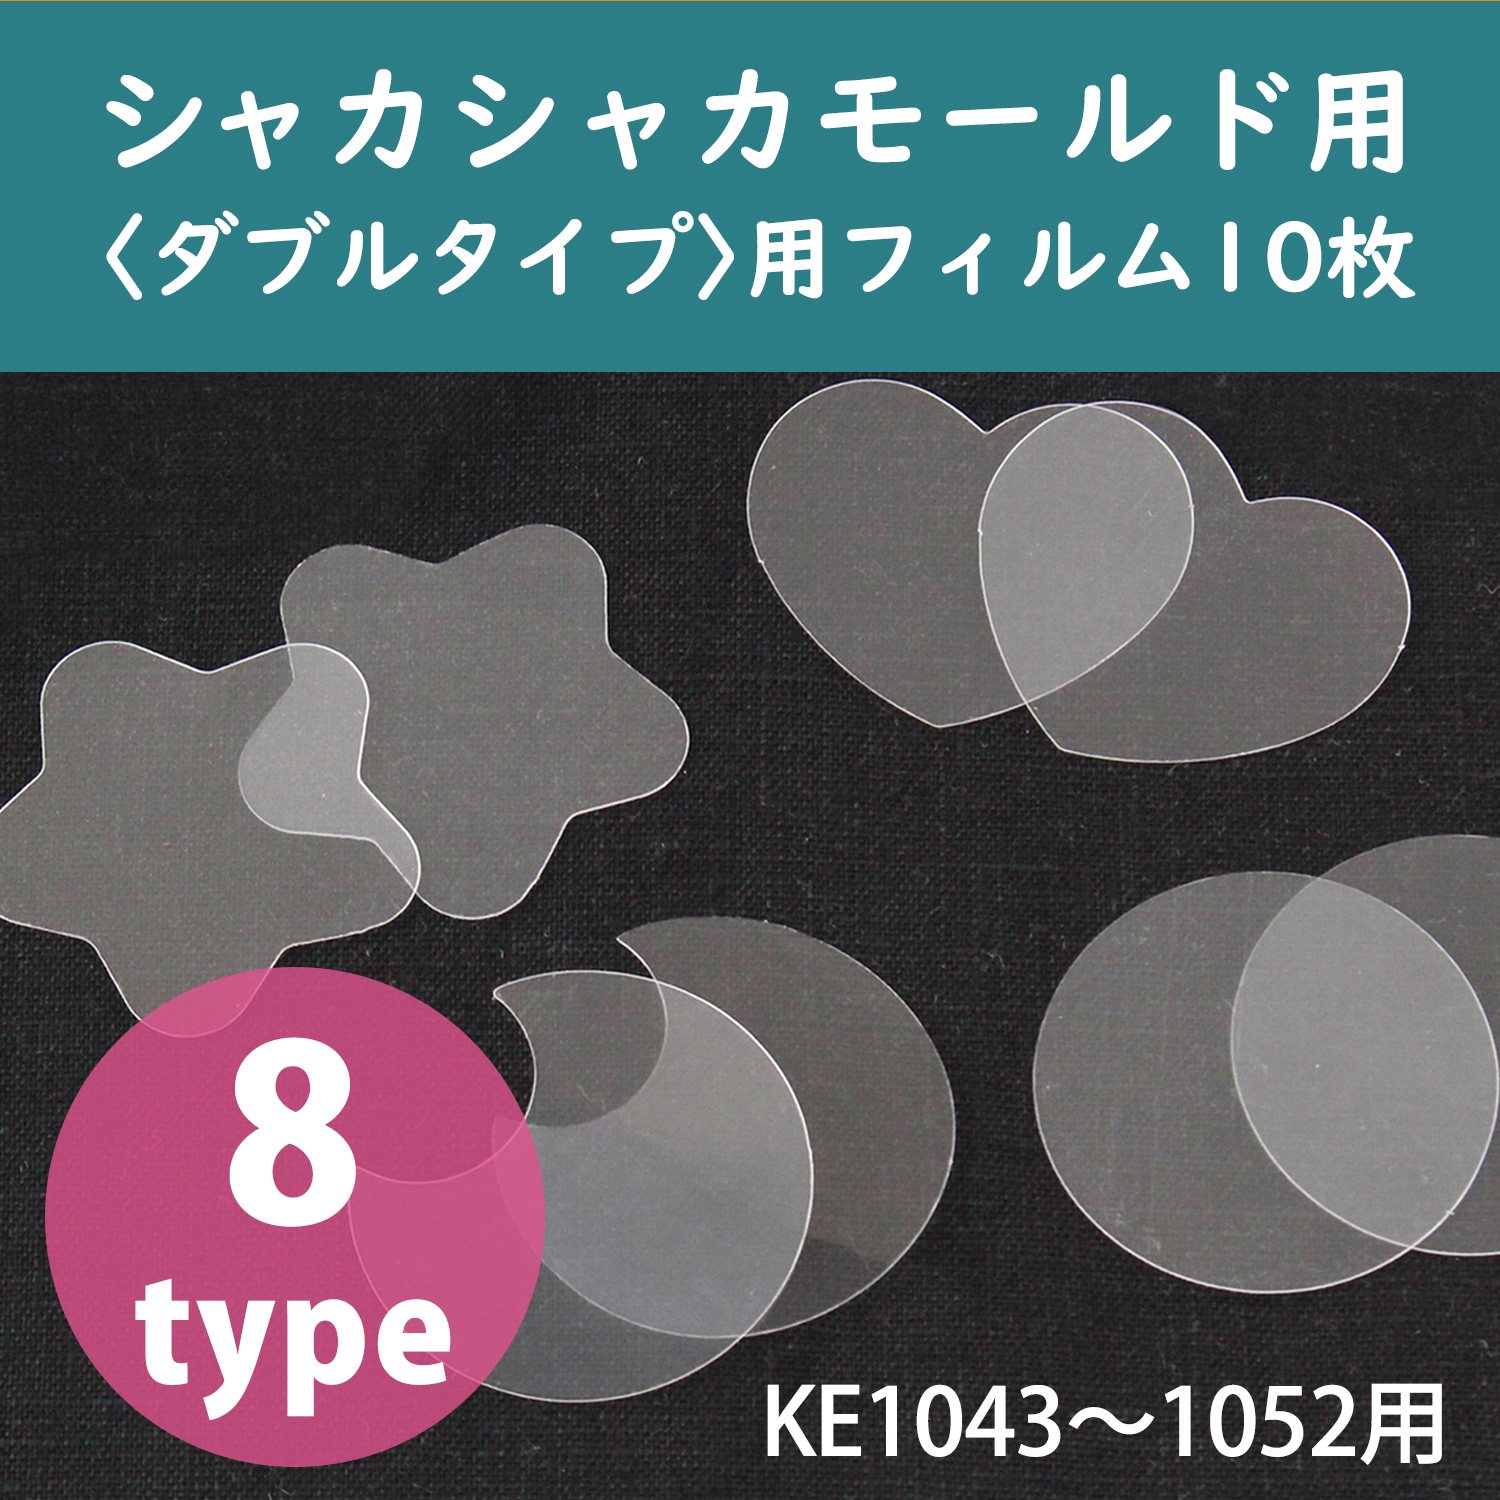 KE1045～1059 Transparent Film for Shaka Shaka Silicone Mold〈double type〉 10pcs (pack)